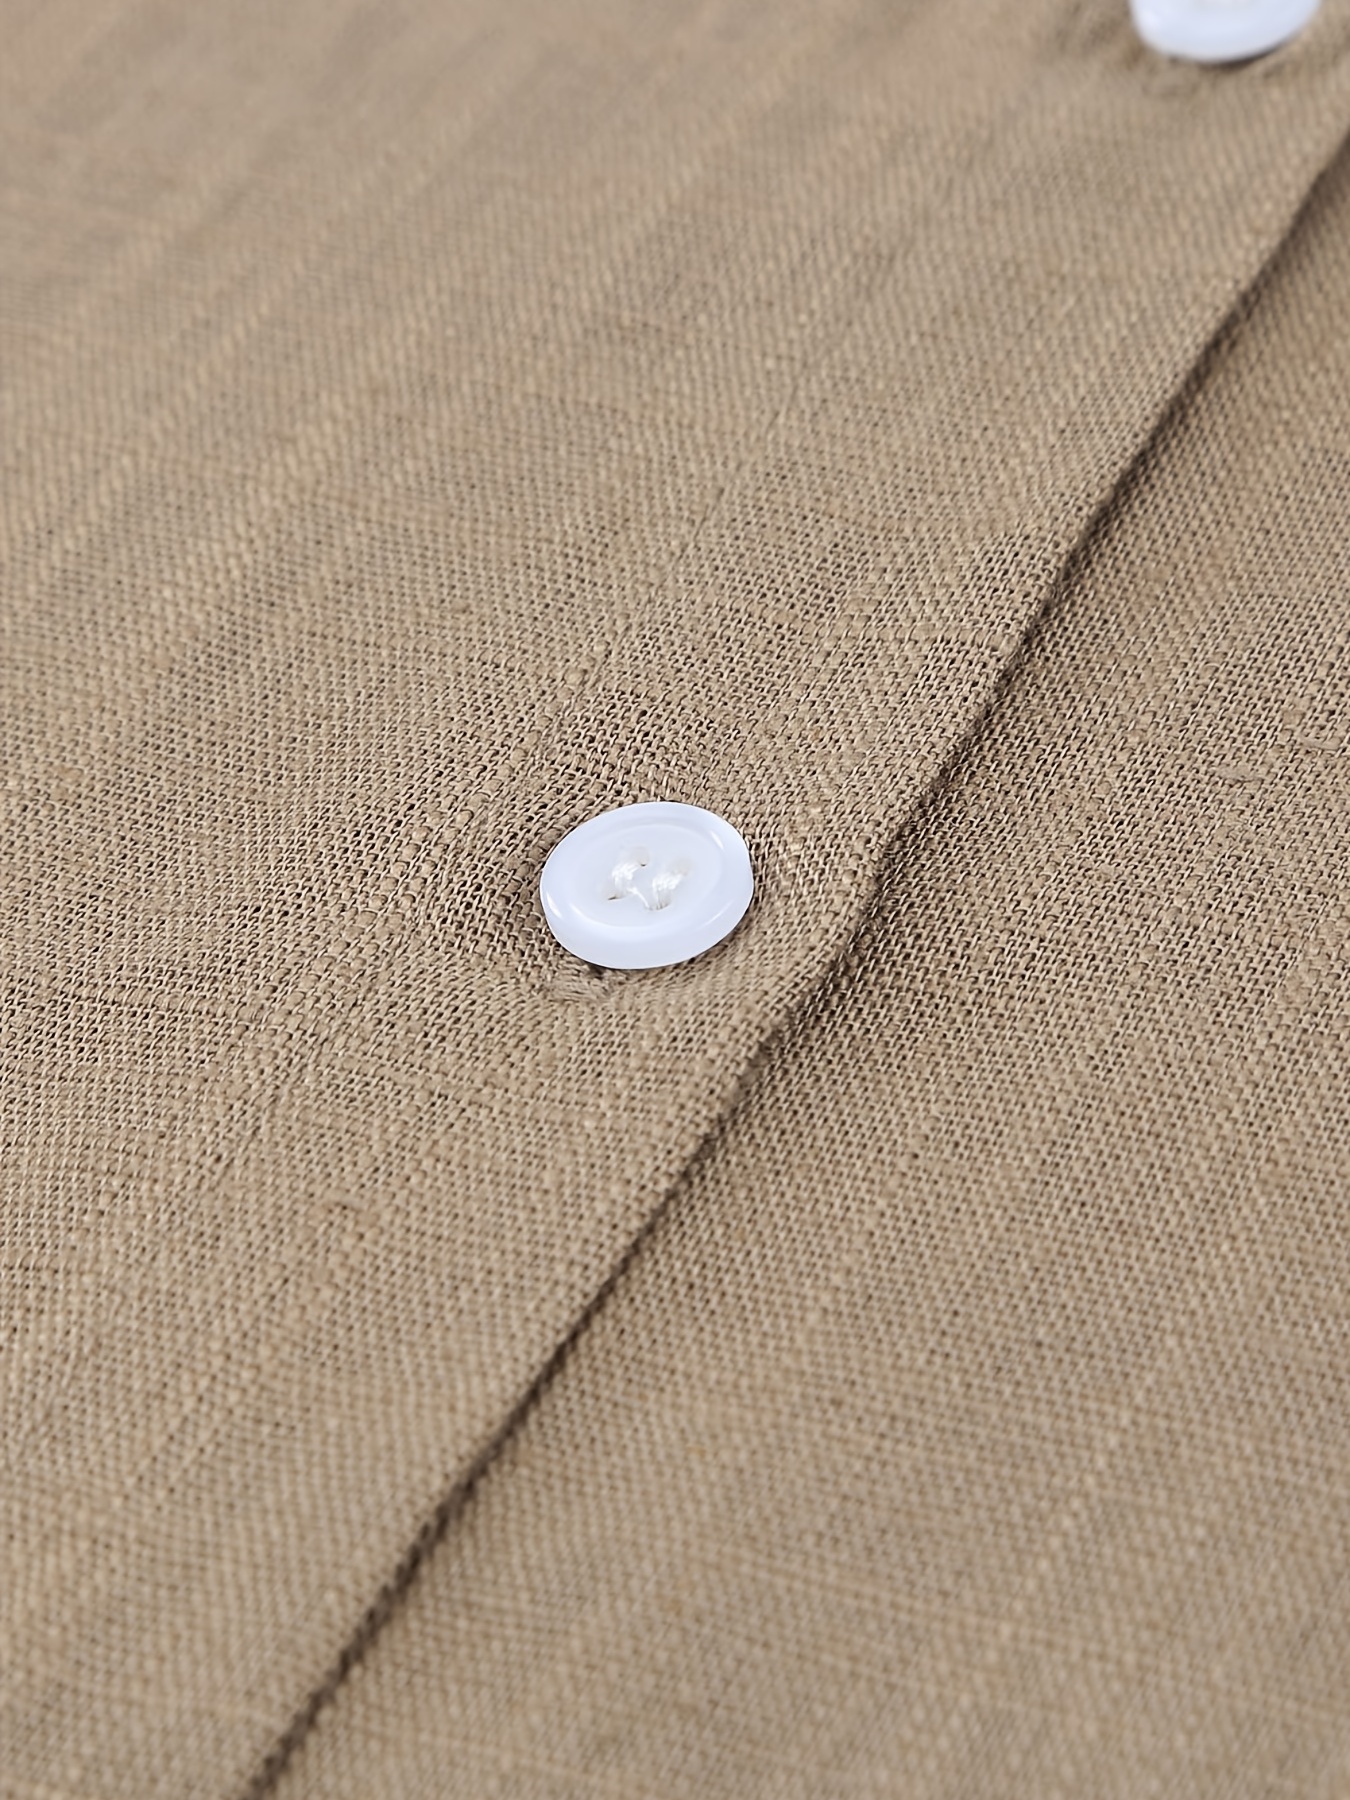 Blusa de mujer Blusa blanca de manga larga con botón de * sólido